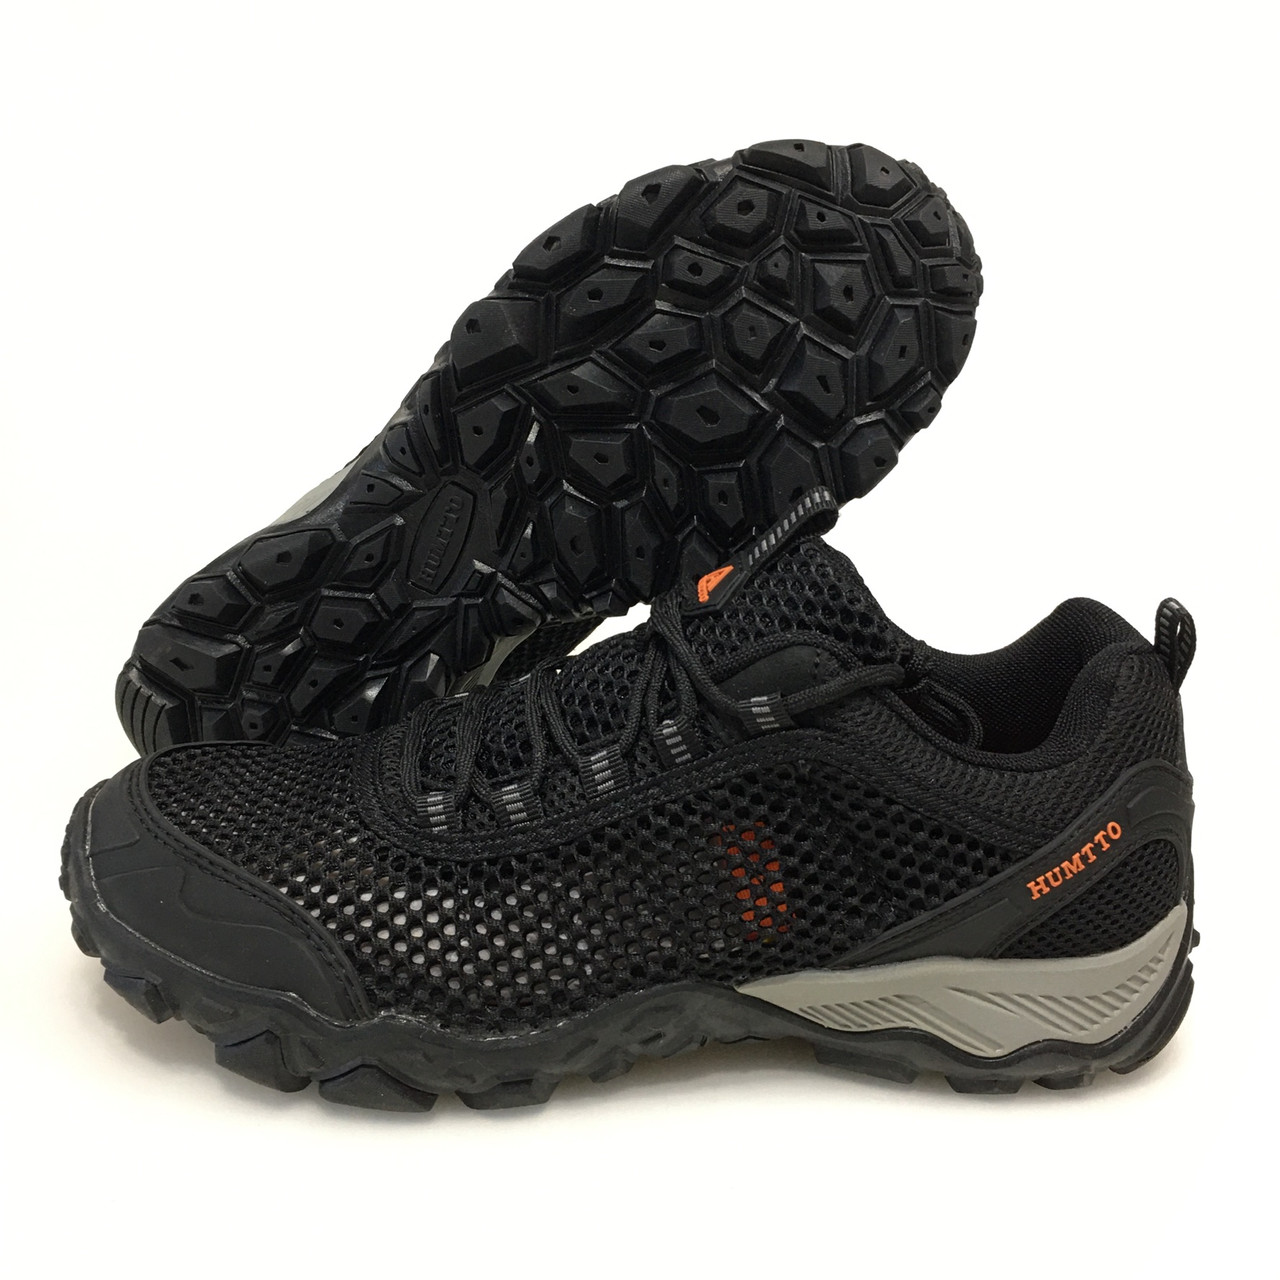 Кросівки трекінгові Humtto чоловічі (110571A-1): комфорт і захист для активного відпочинку та спорту